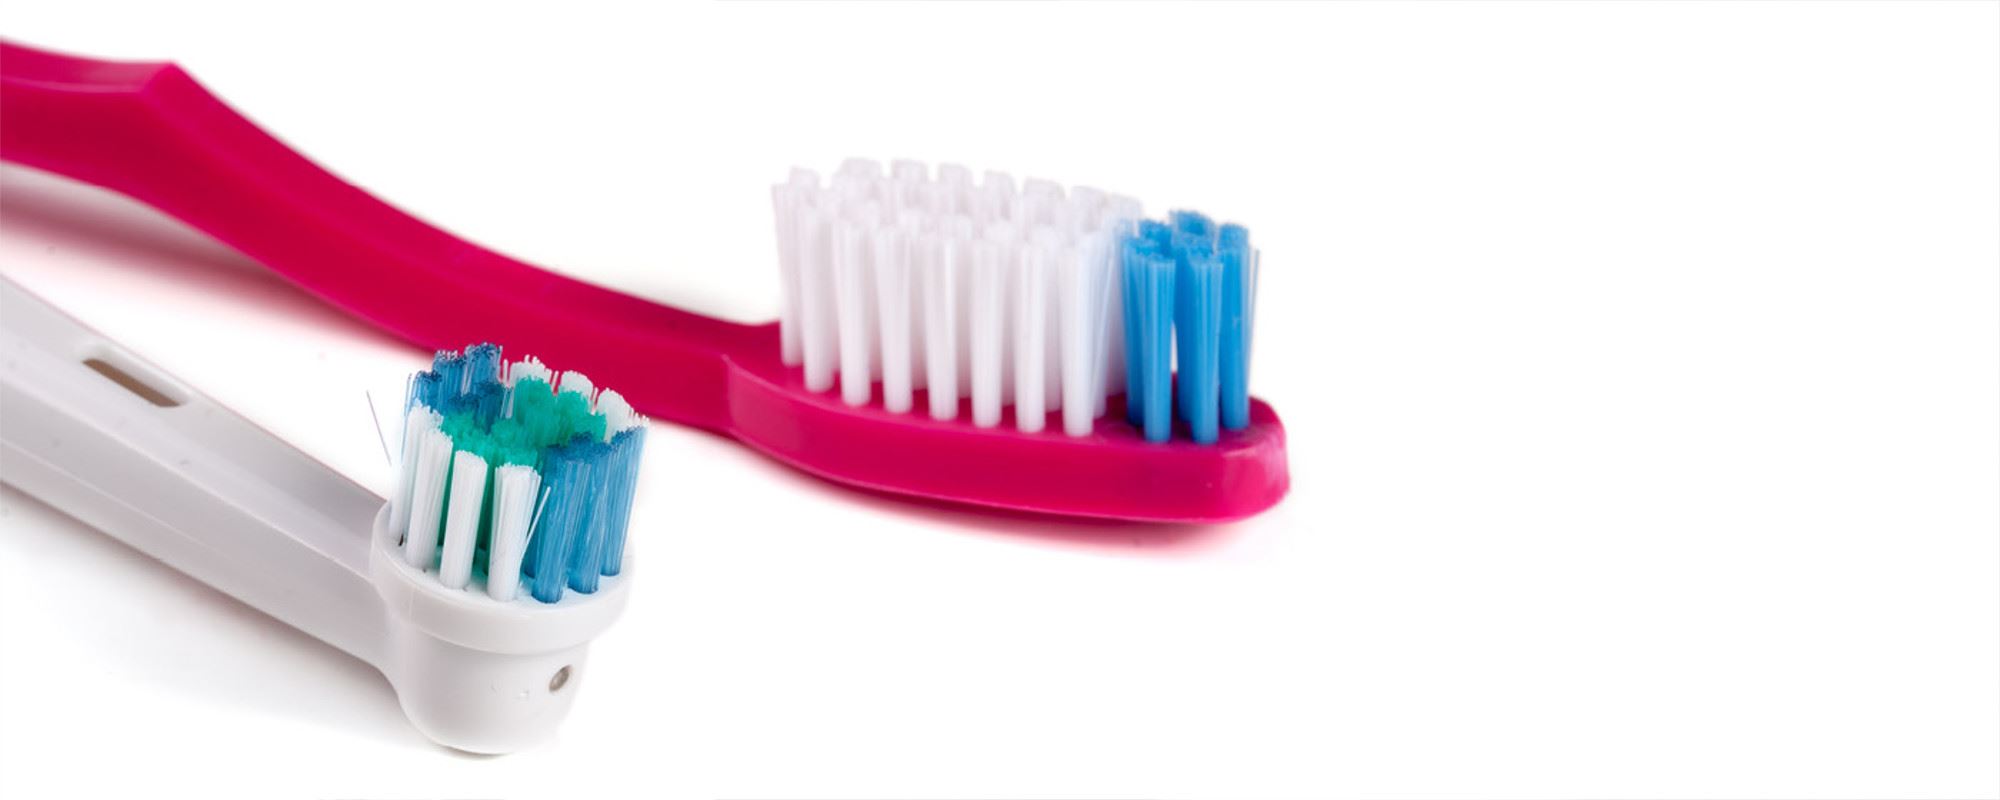 È meglio lo spazzolino elettrico o quello manuale? Ecco i nostri consigli per scegliere il più adatto!